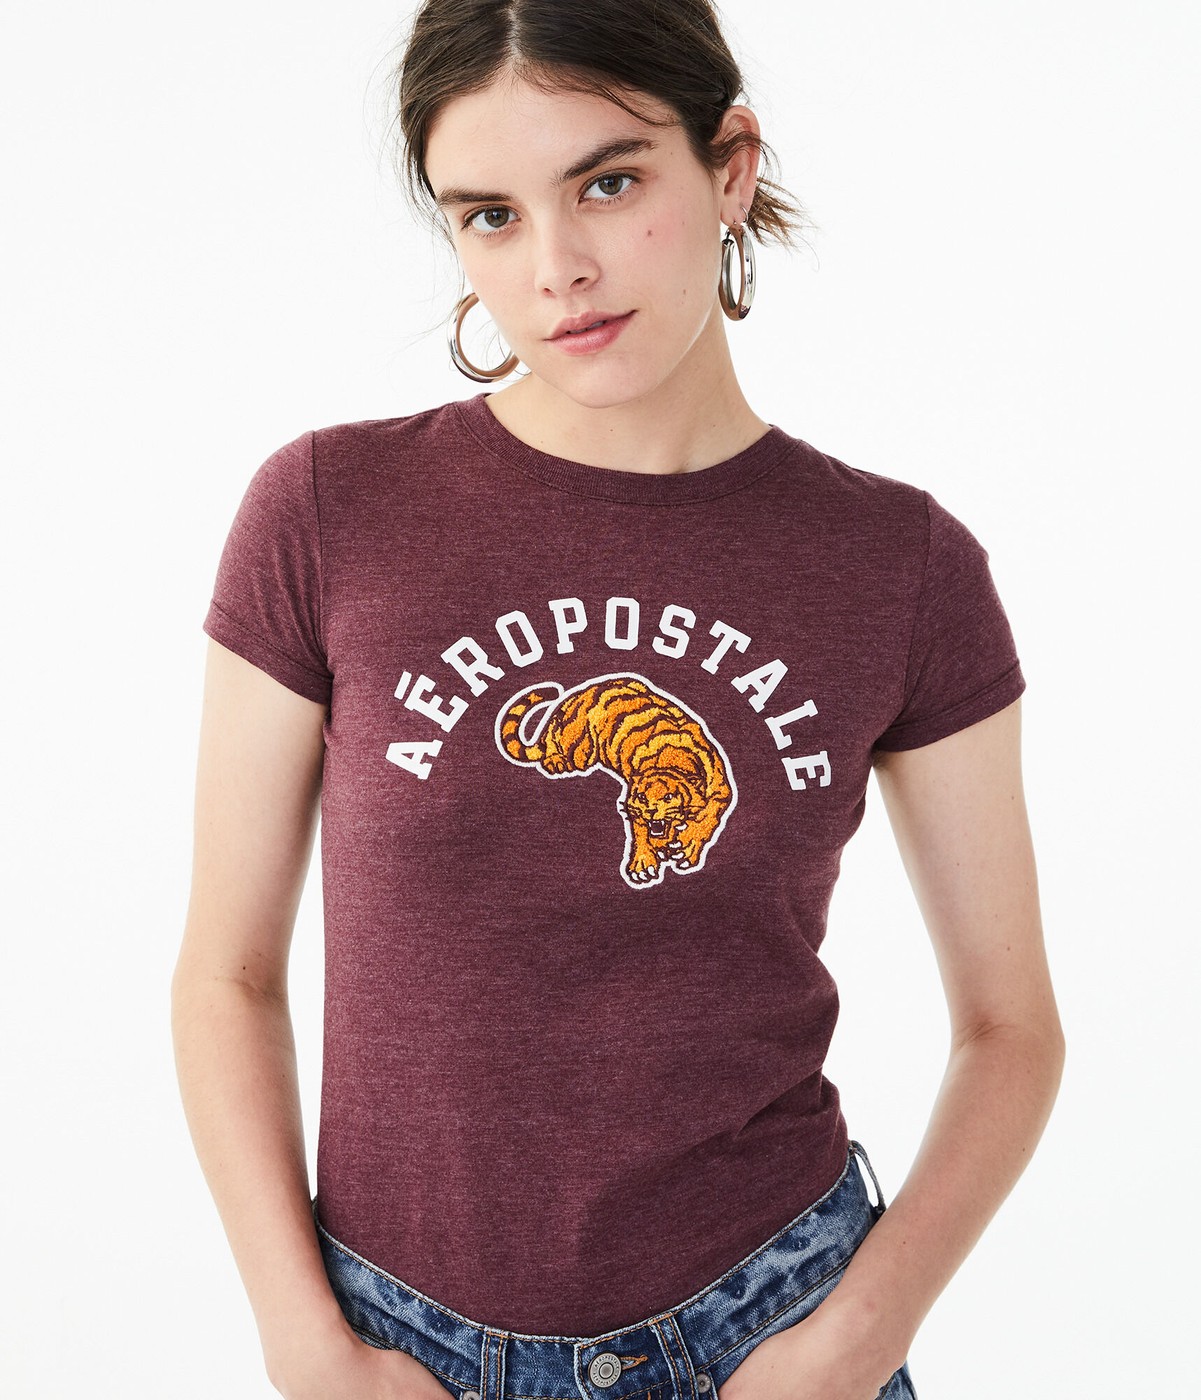 Бордовая футболка - женская футболка Aeropostale